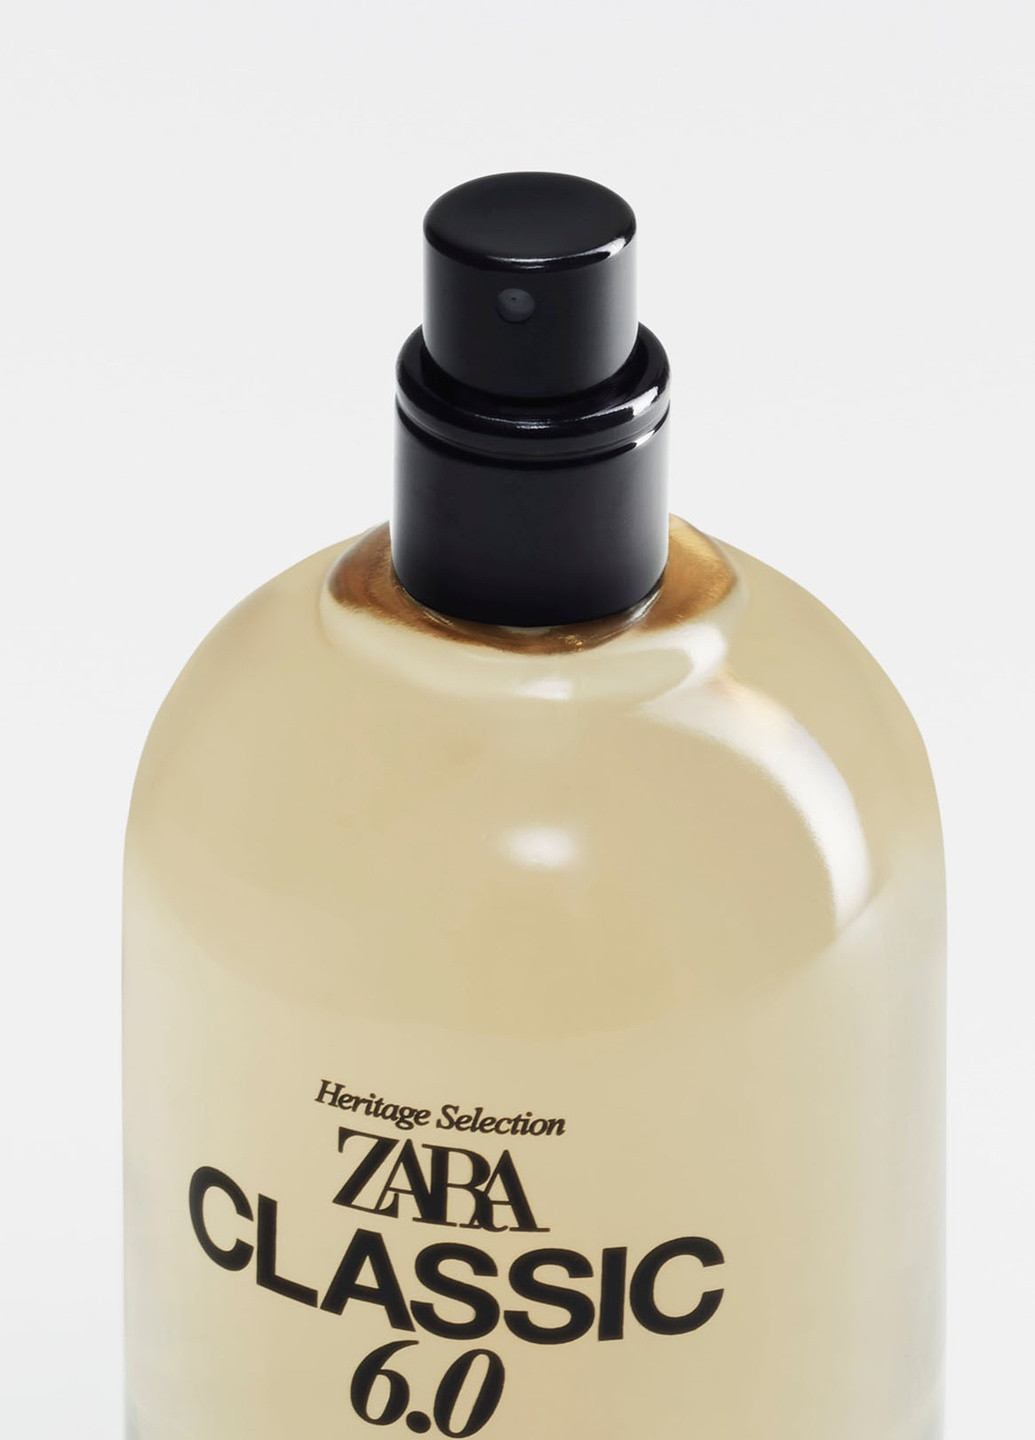 Мужская туалетная вода, 100 мл - Восточный аромат, мужские духи, парфюмерия Zara classic 6.0 (252661964)